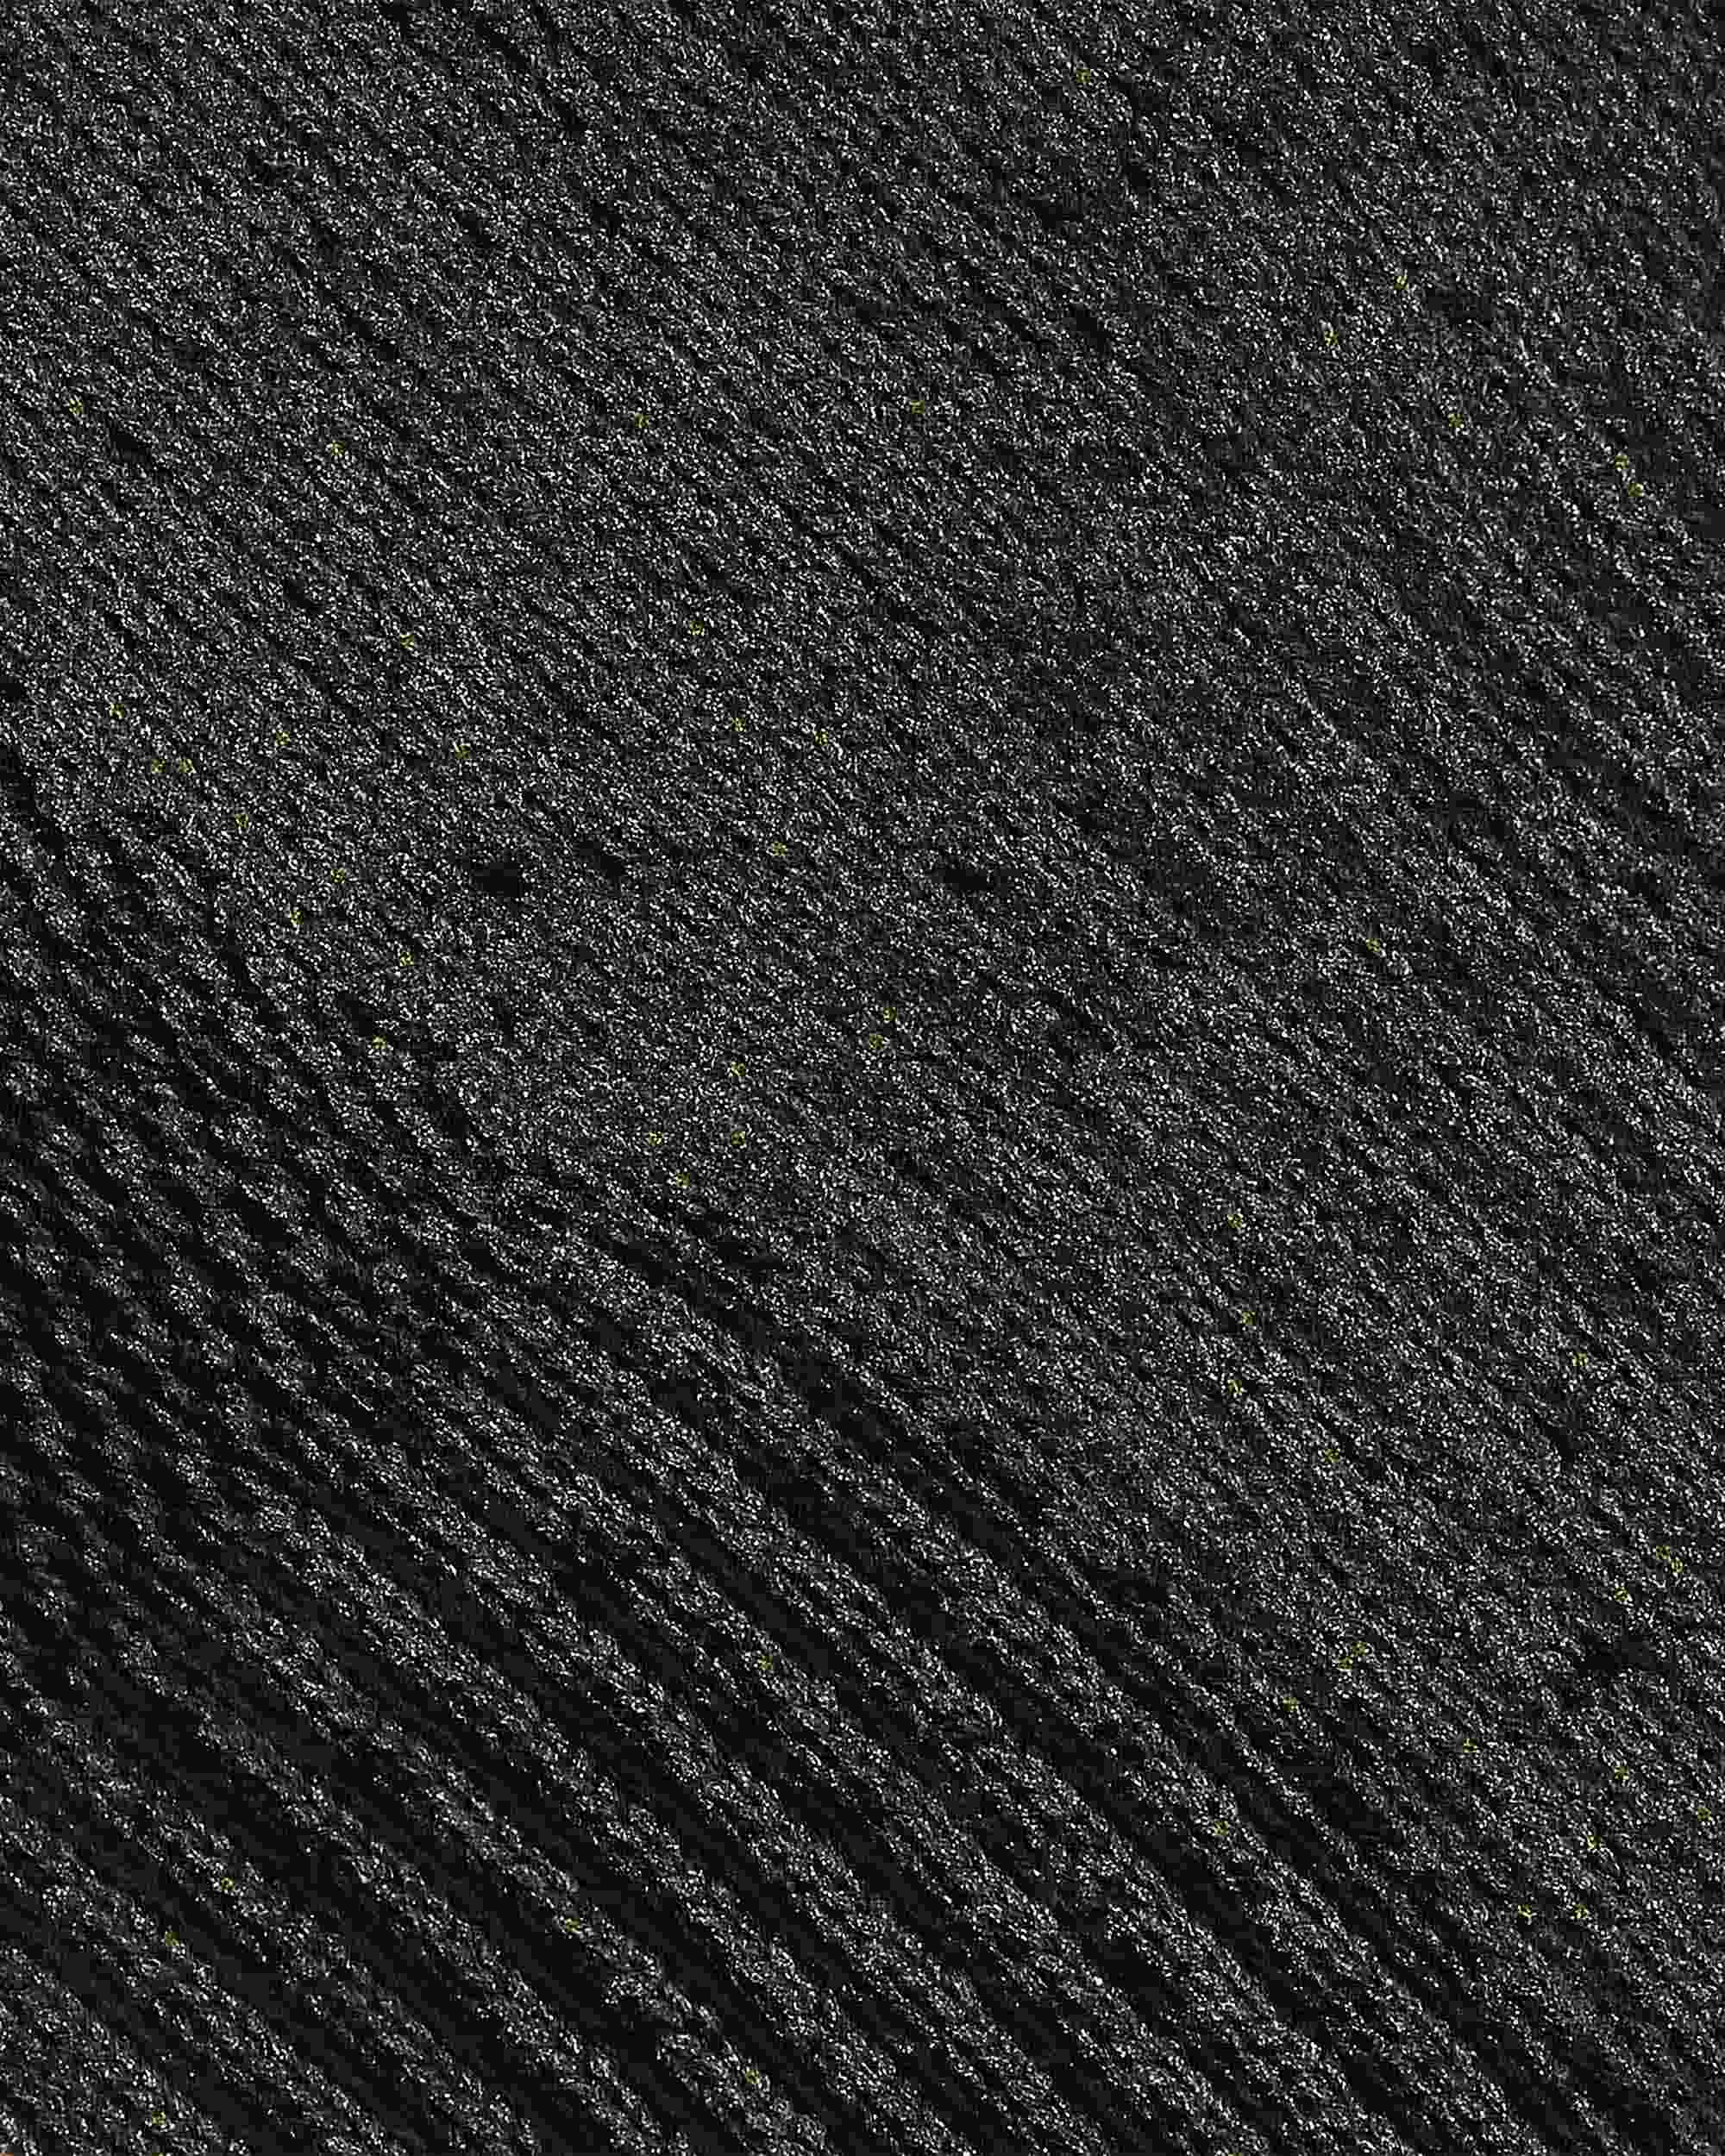 Merino Tech Wool Socks (3 Pairs)